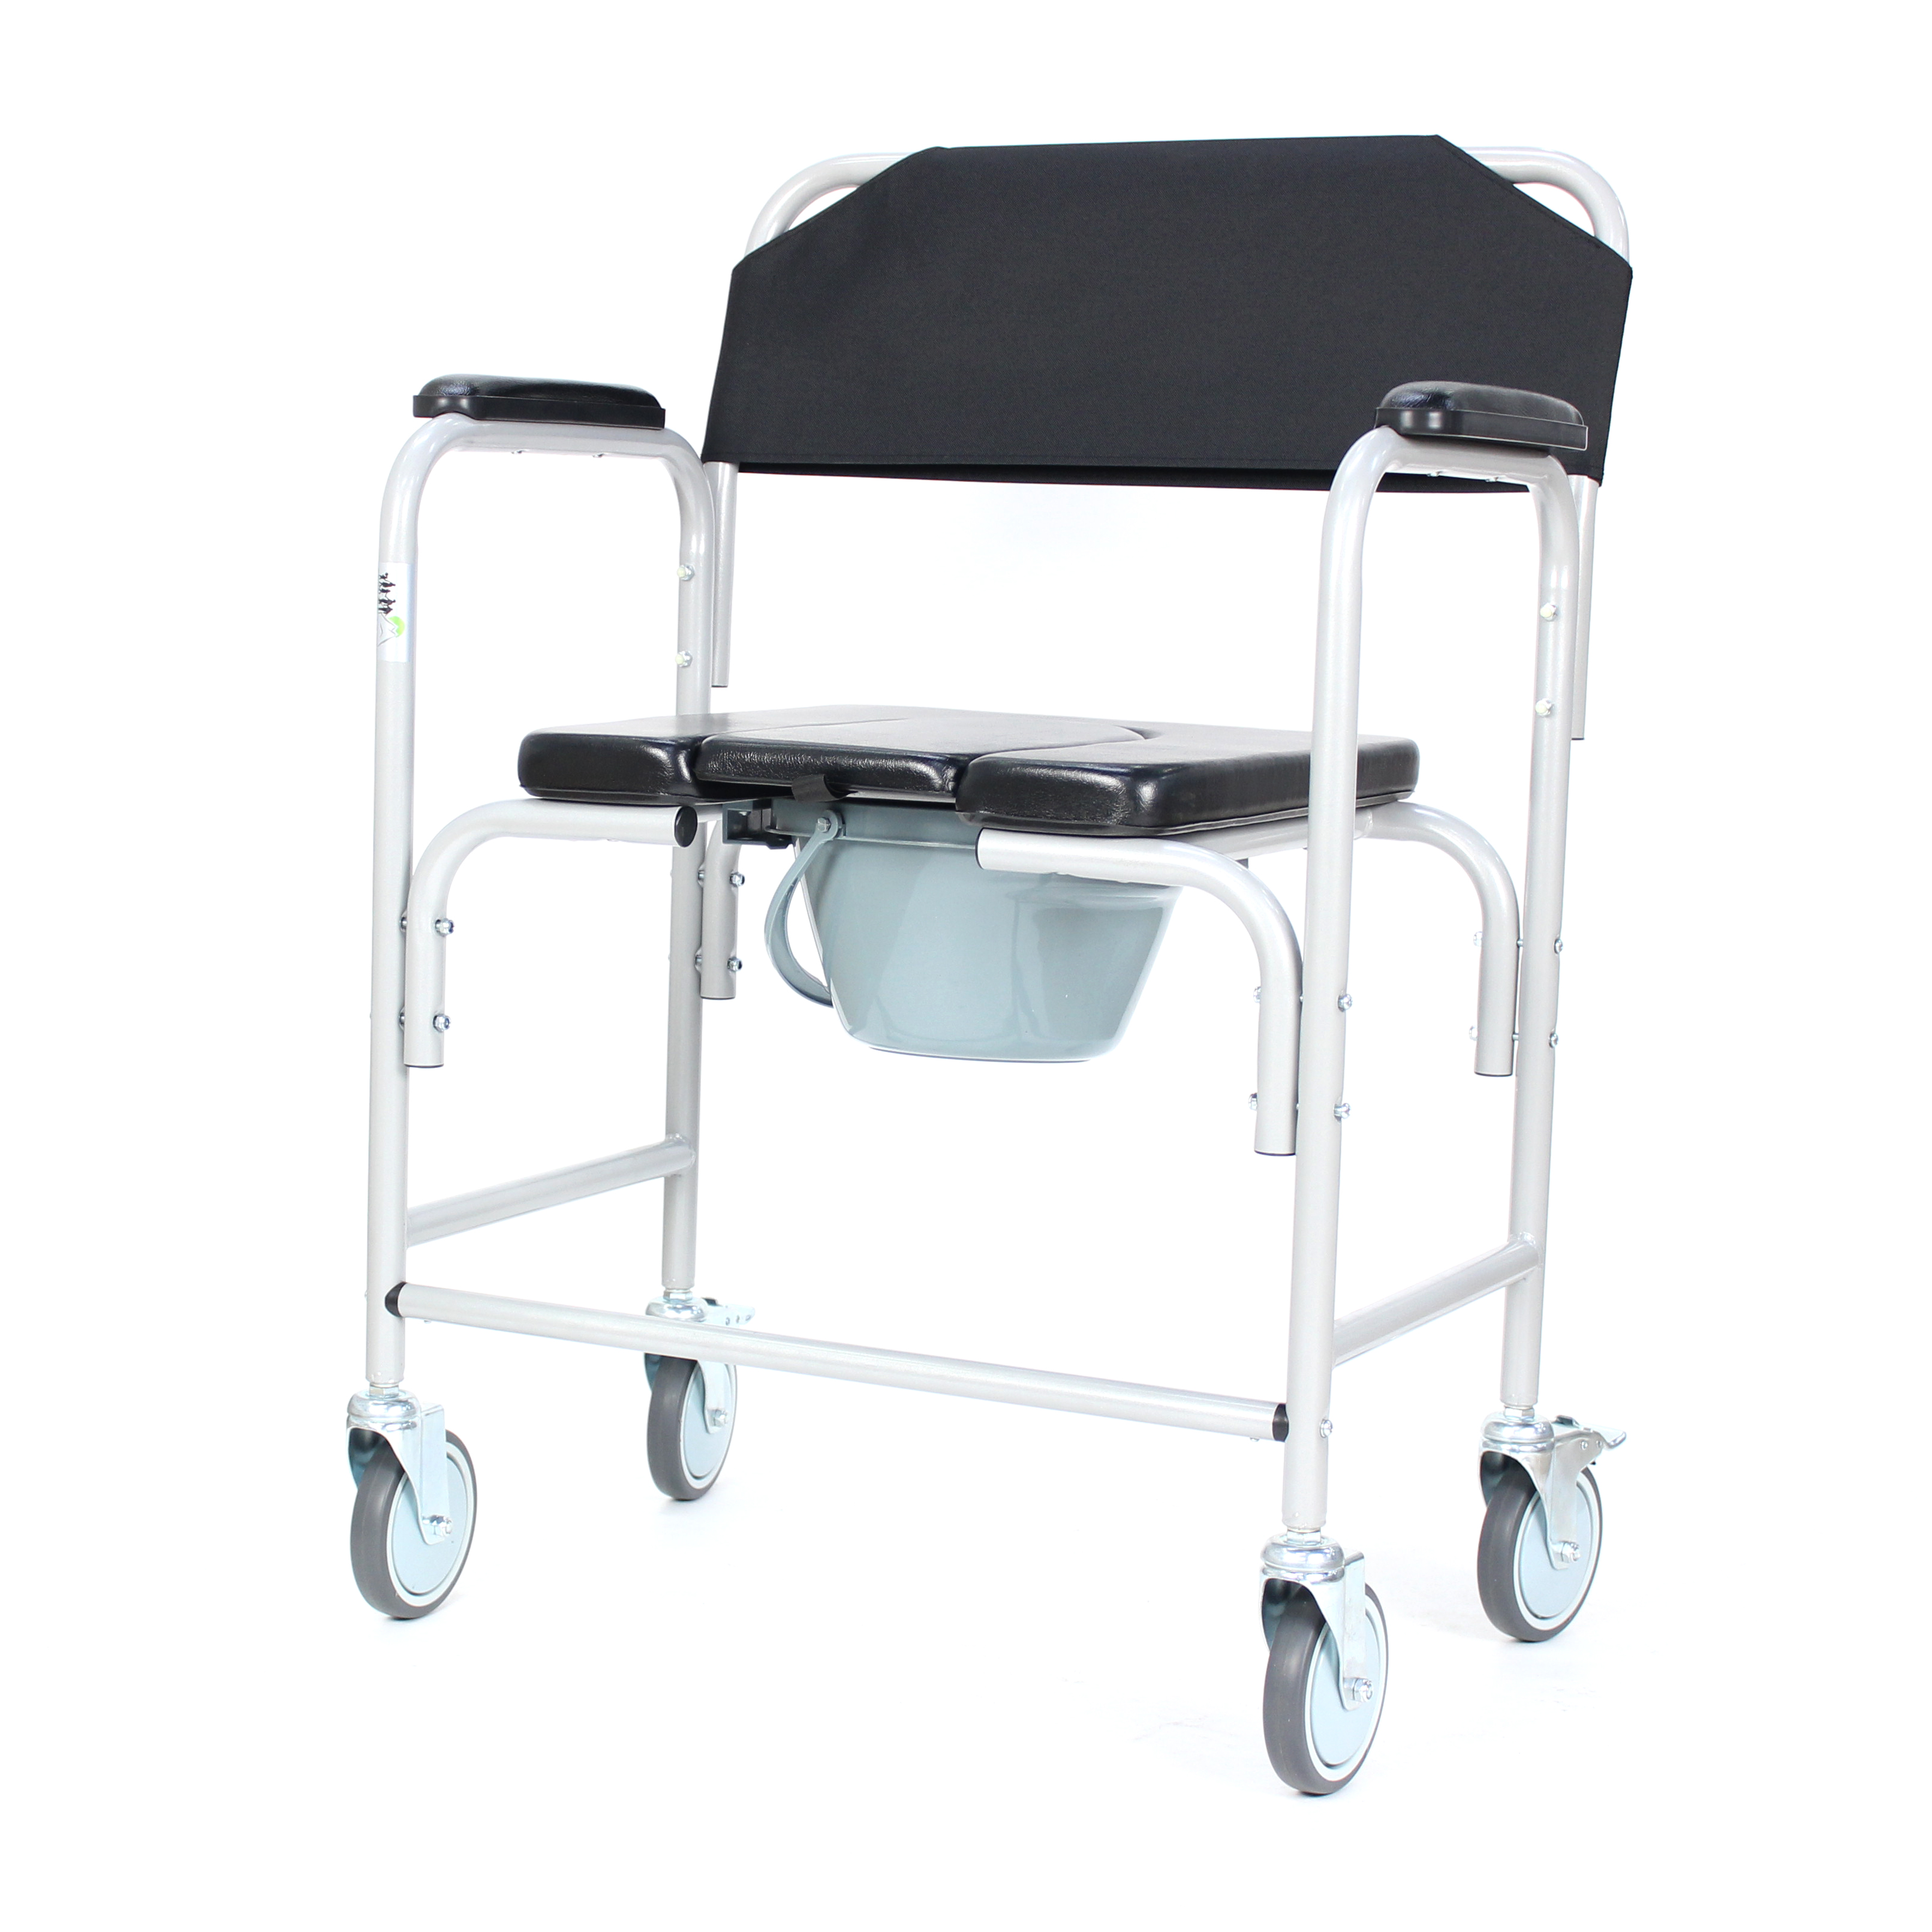 Fabricants d'équipements de physiothérapie, chaise d'aisance, vente en gros, MOQ, 50 pièces, chaise de toilette pour patients